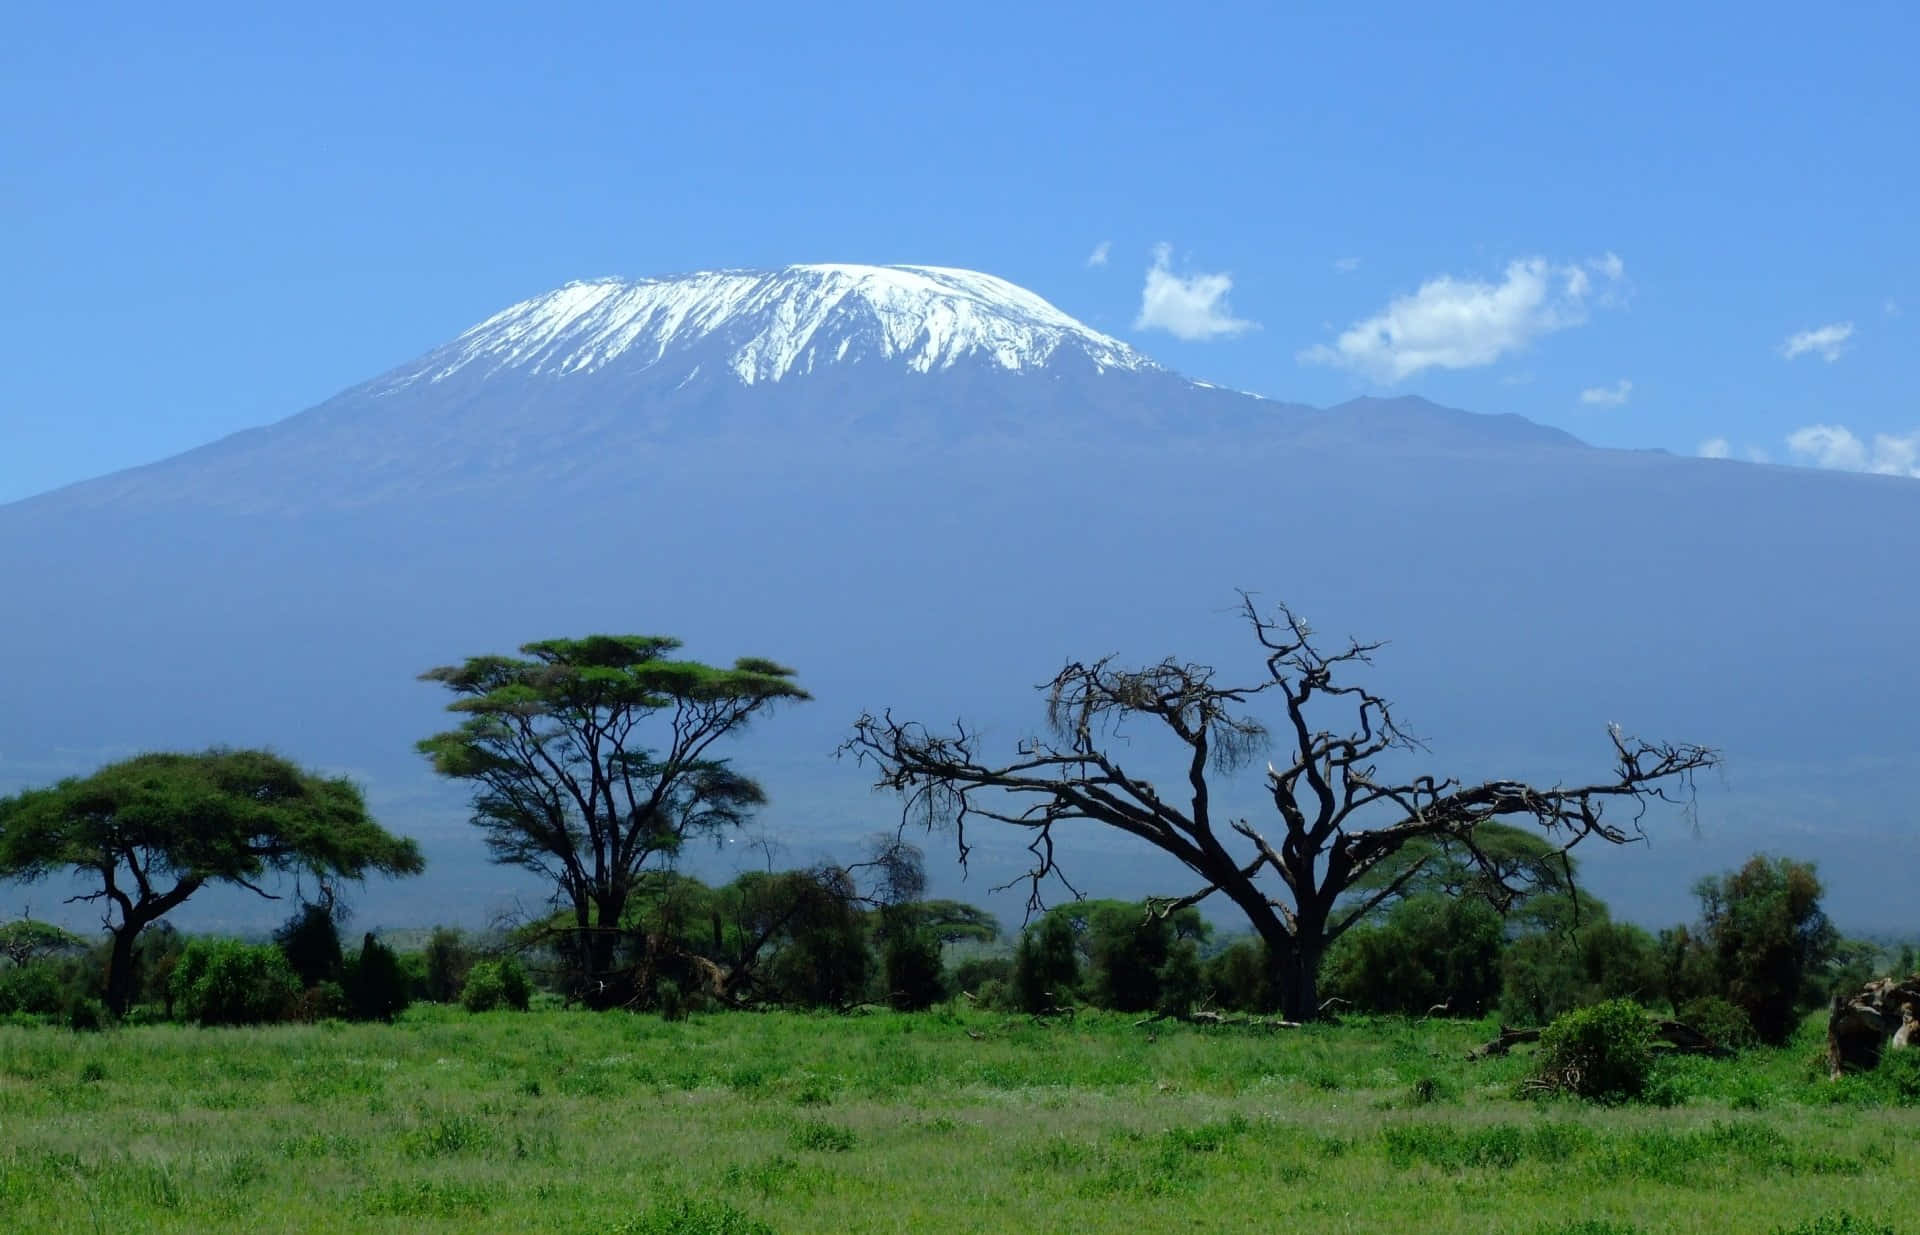 Kilimanjaro 1920 X 1235 Wallpaper